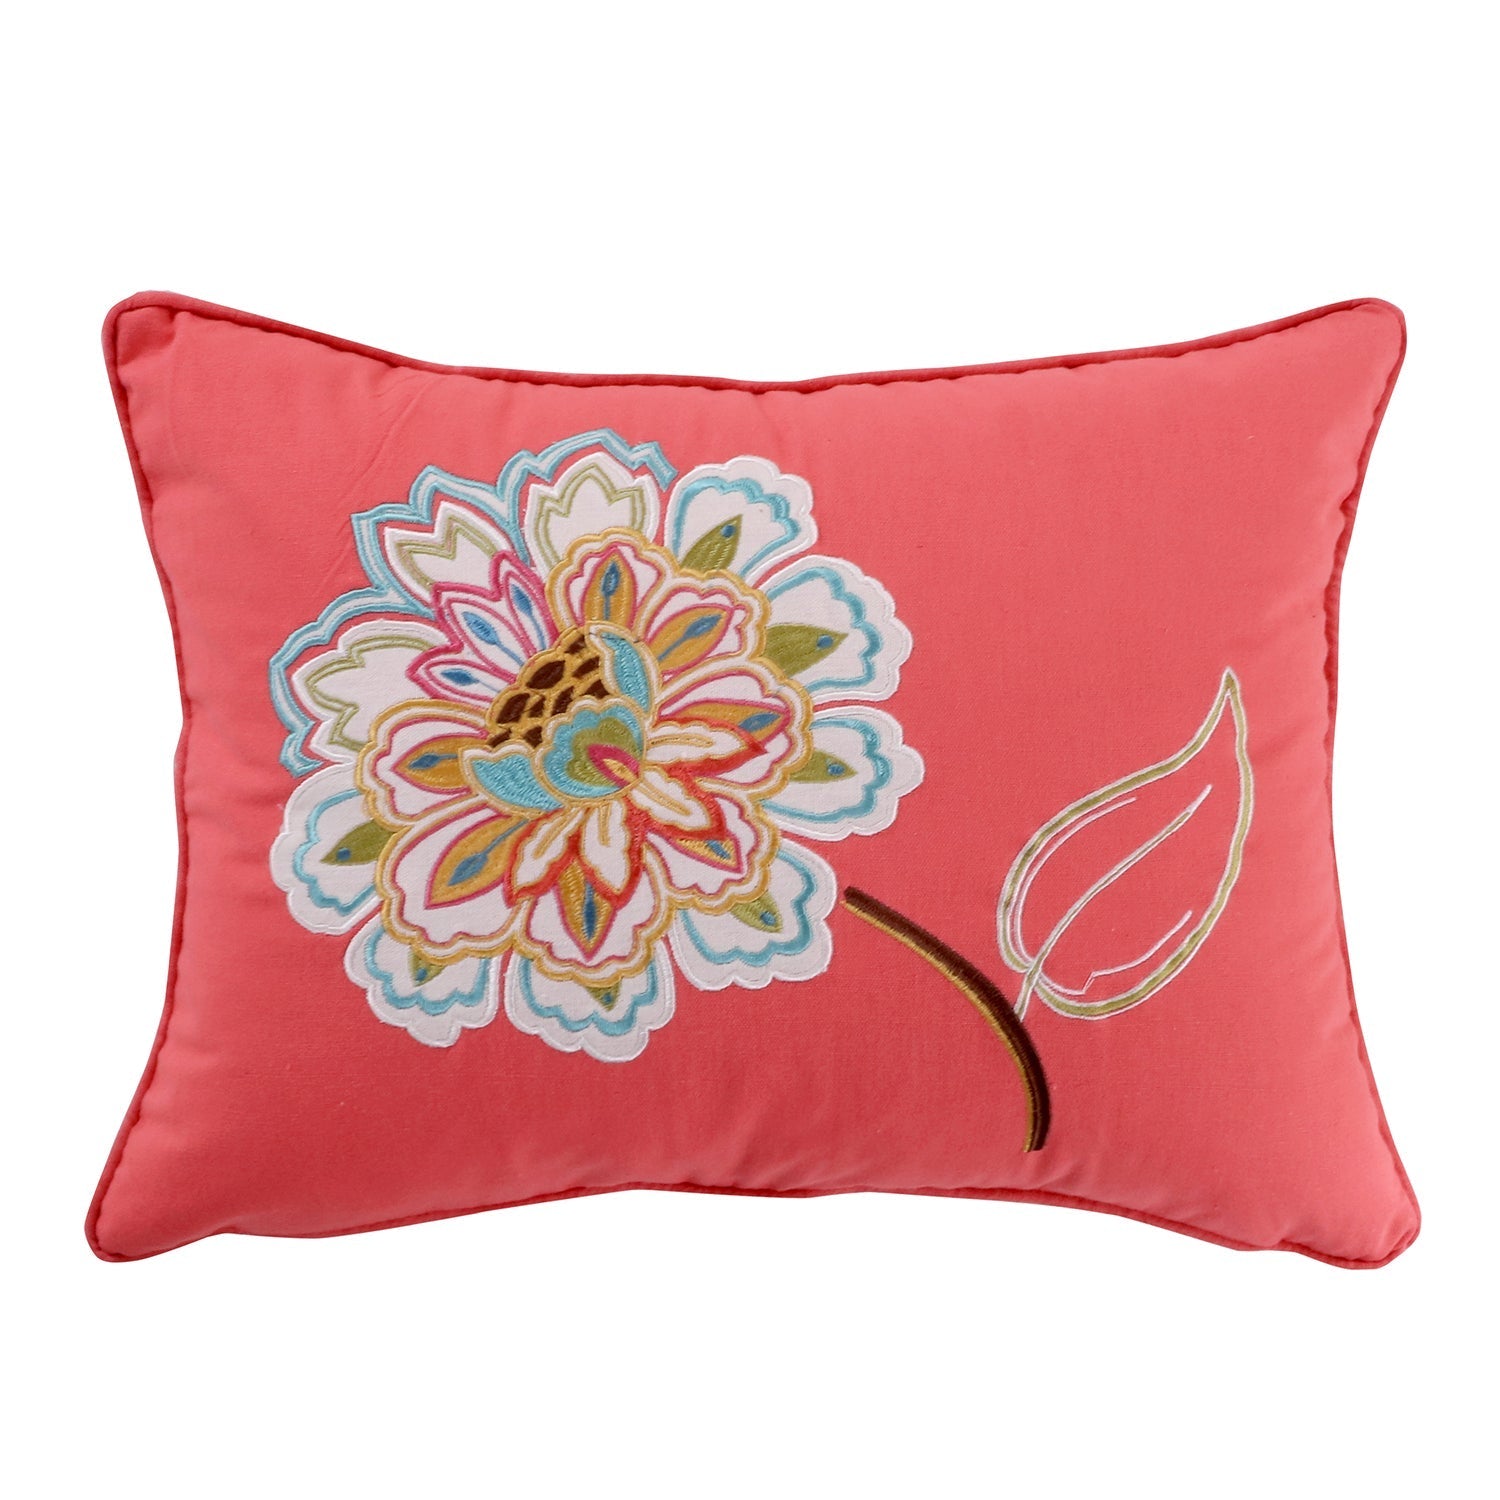 Sophia Appliqued Flower Pillow